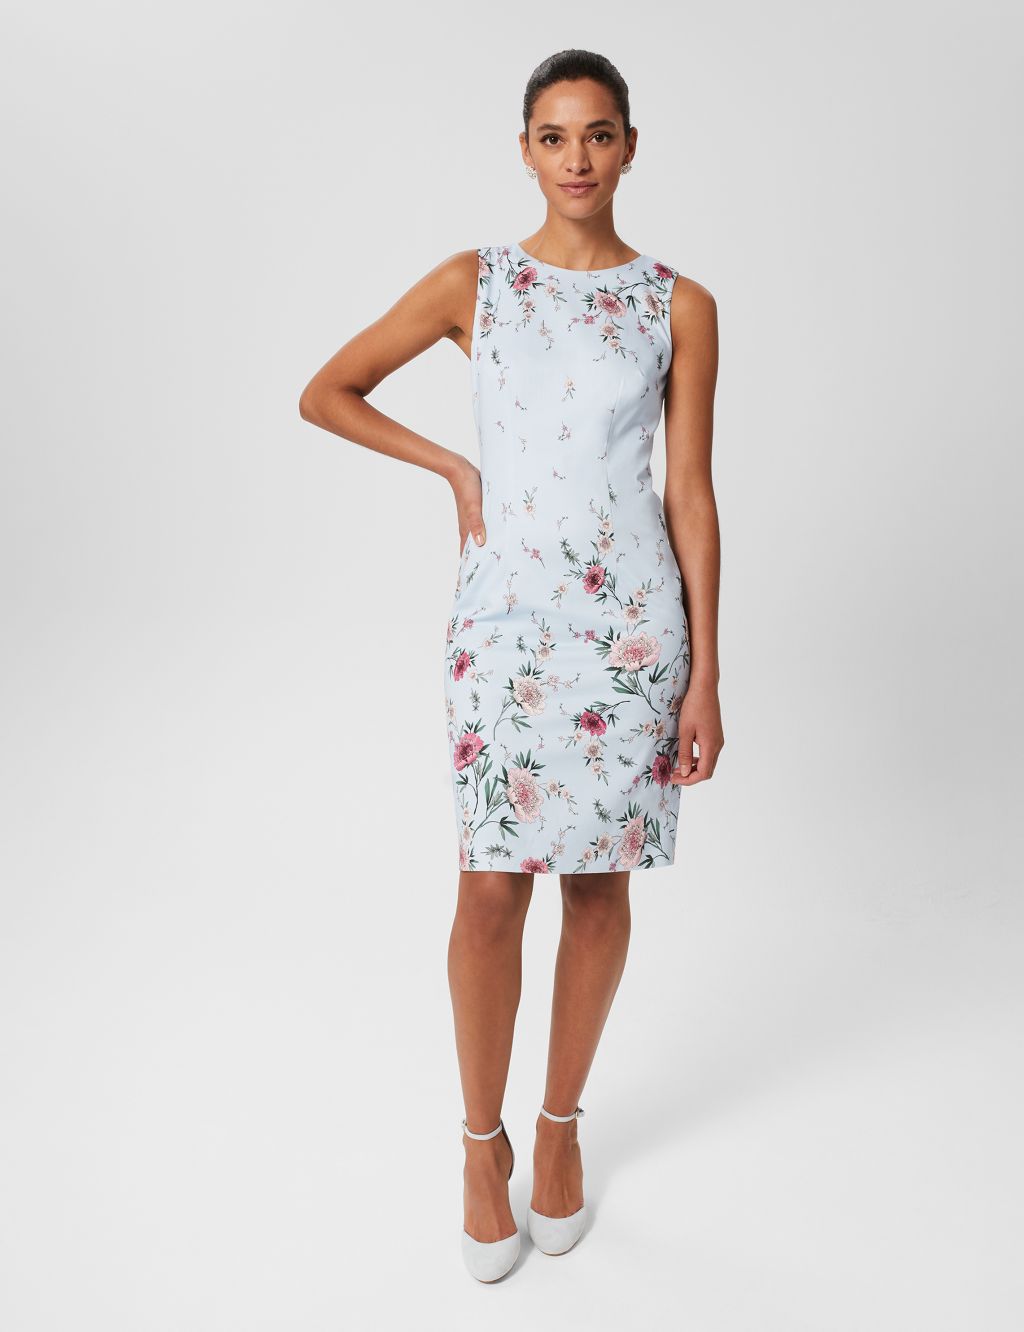 Cotton Rich Floral Knee Length Shift Dress image 1